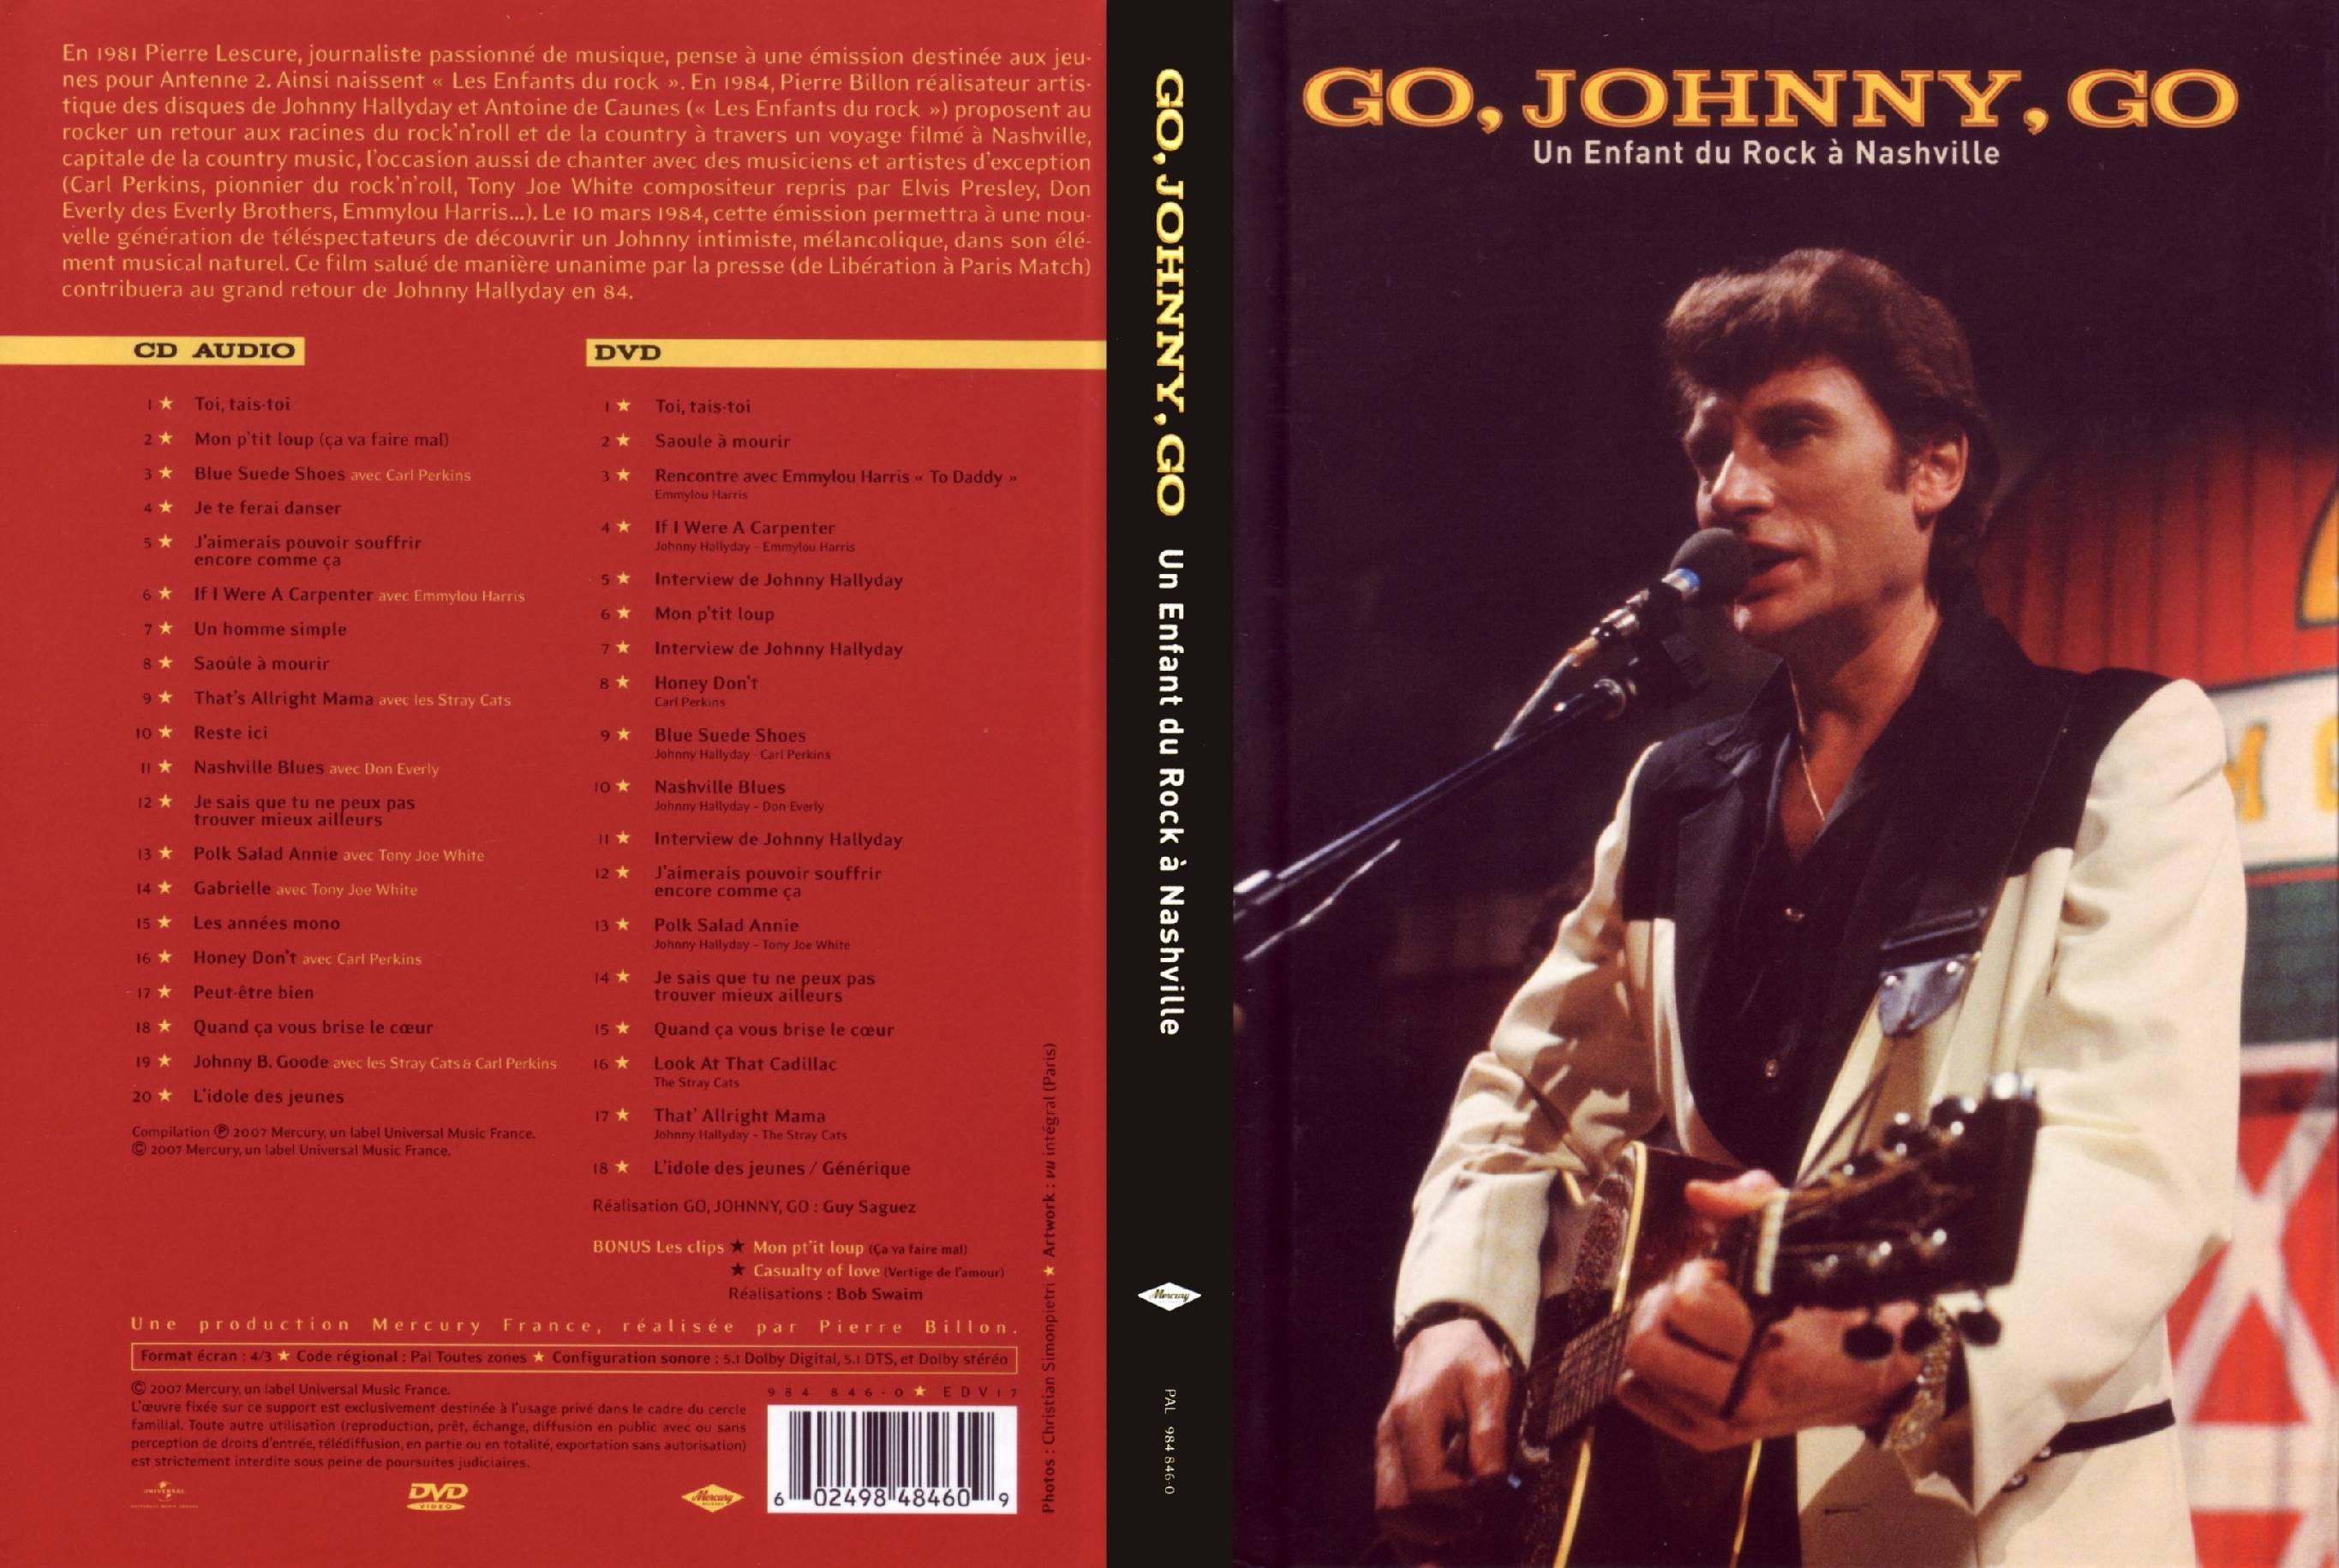 Jaquette DVD Go, Johnny, go un enfant du rock  Nashville